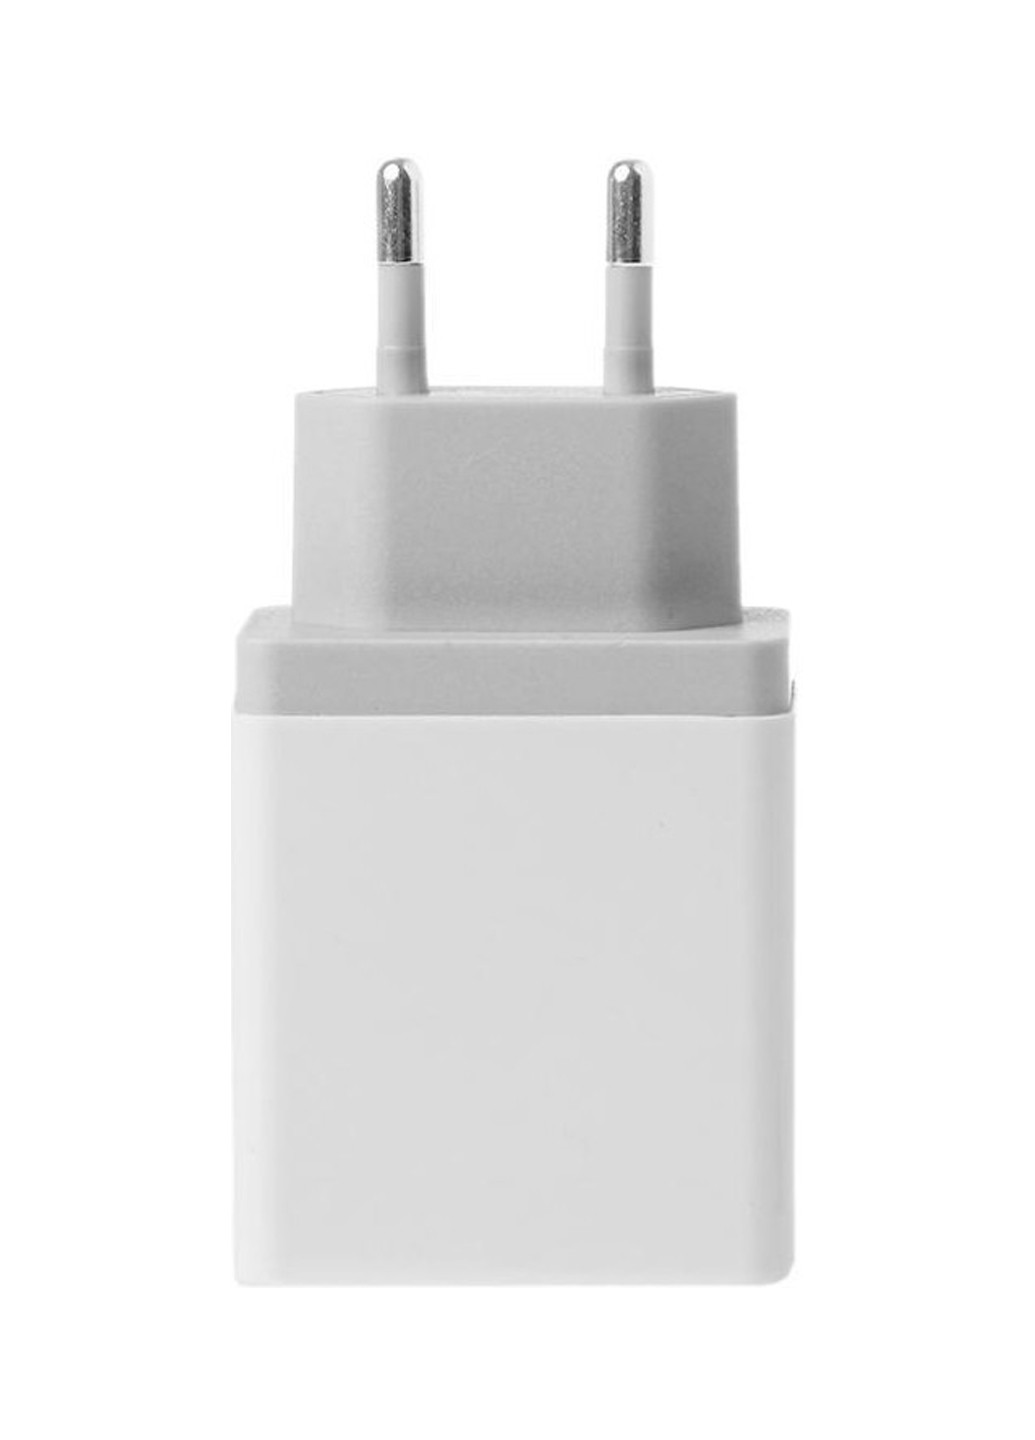 Сетевое зарядное устройство 2 USB, 2.4A White XoKo wc-210 (132504975)